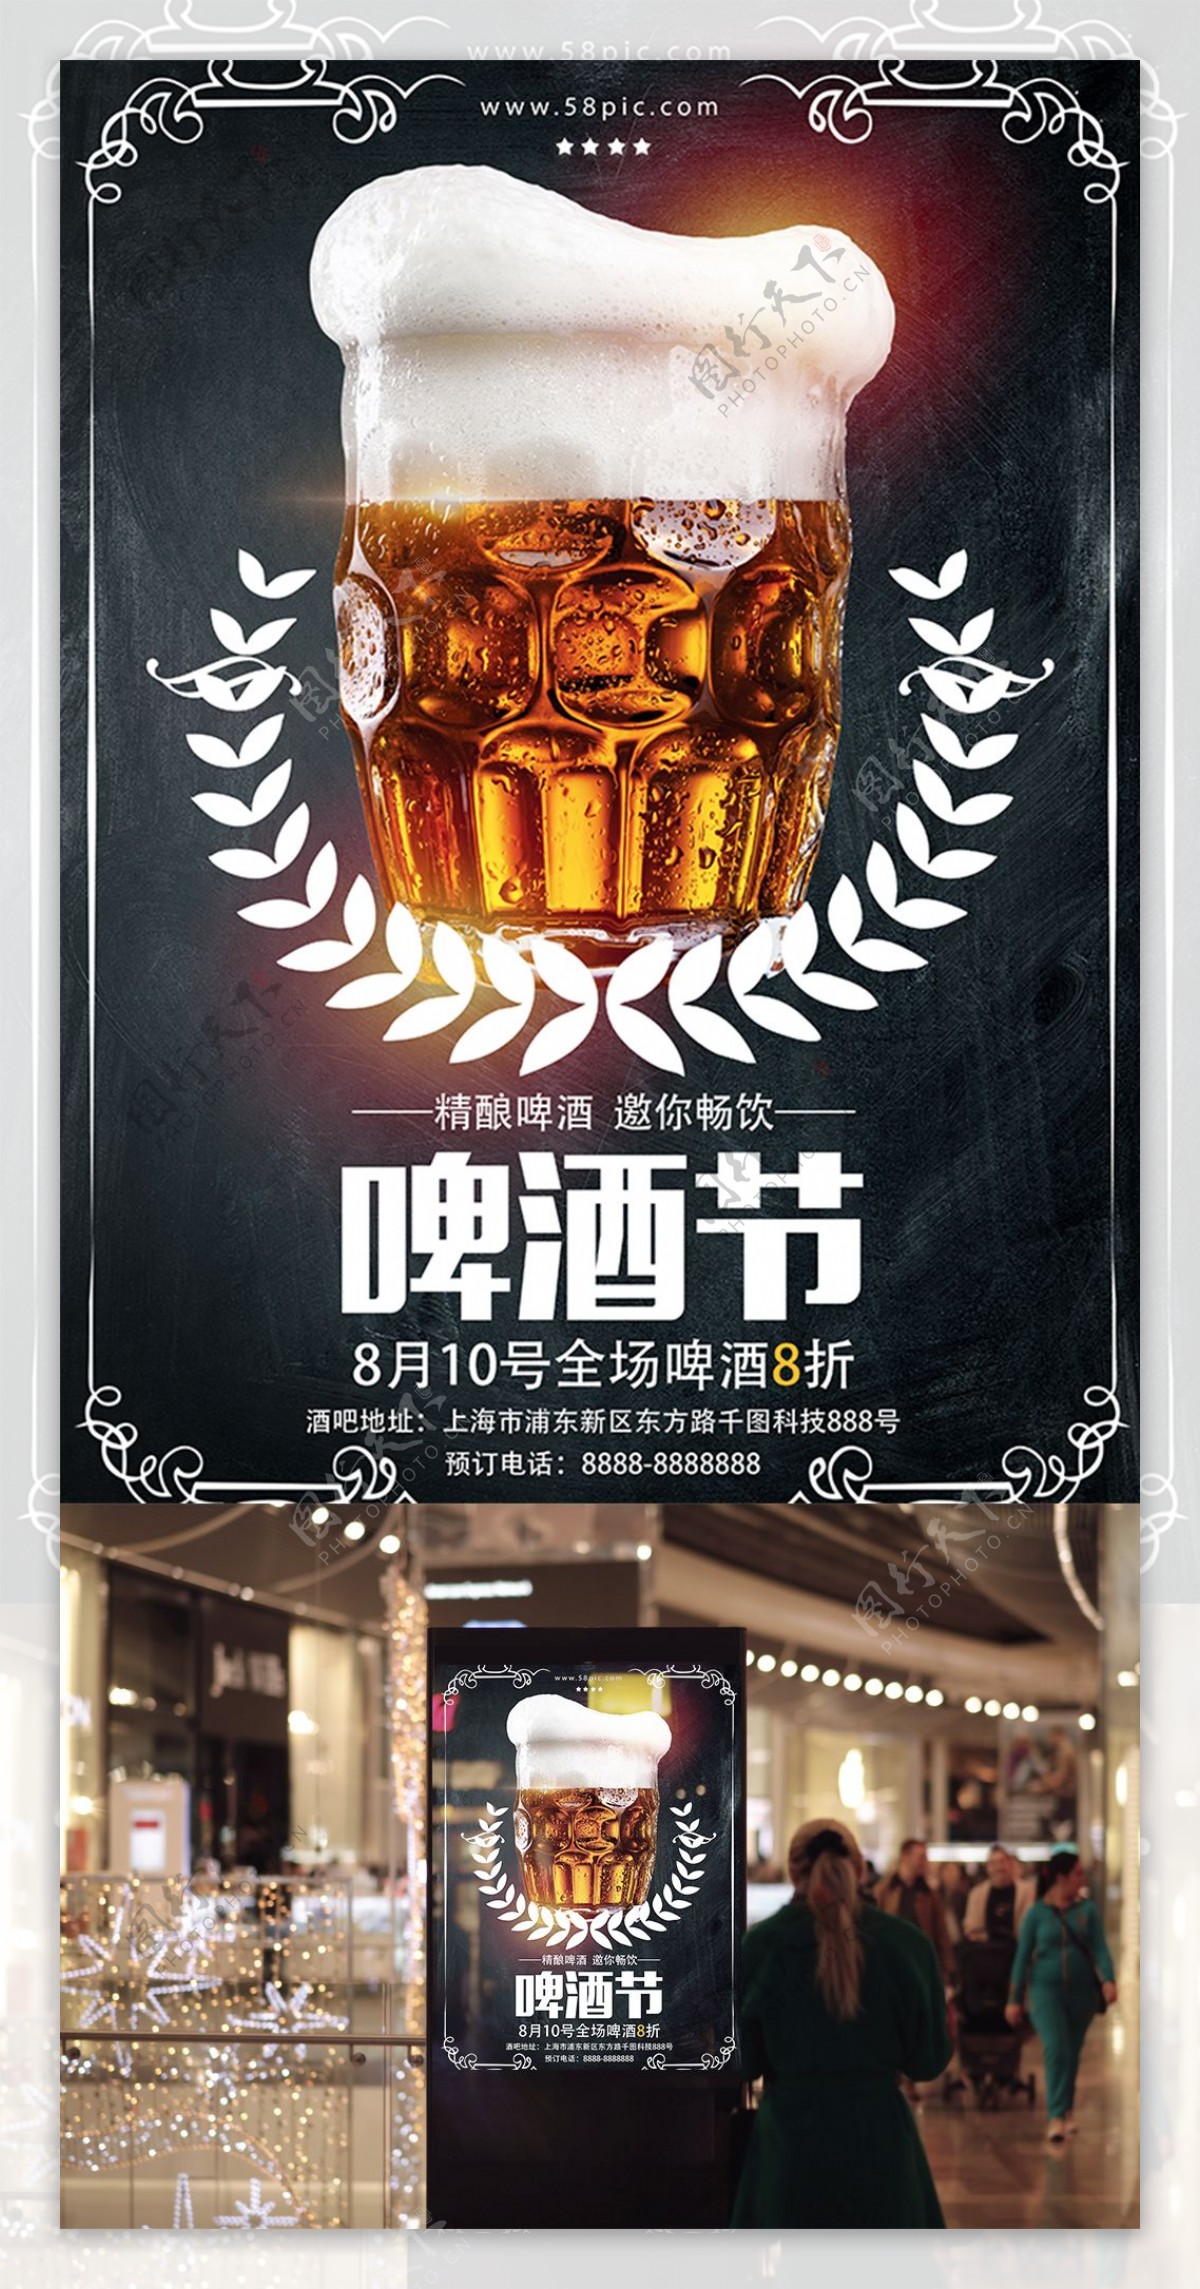 创意黑色冰镇啤酒啤酒节促销宣传海报